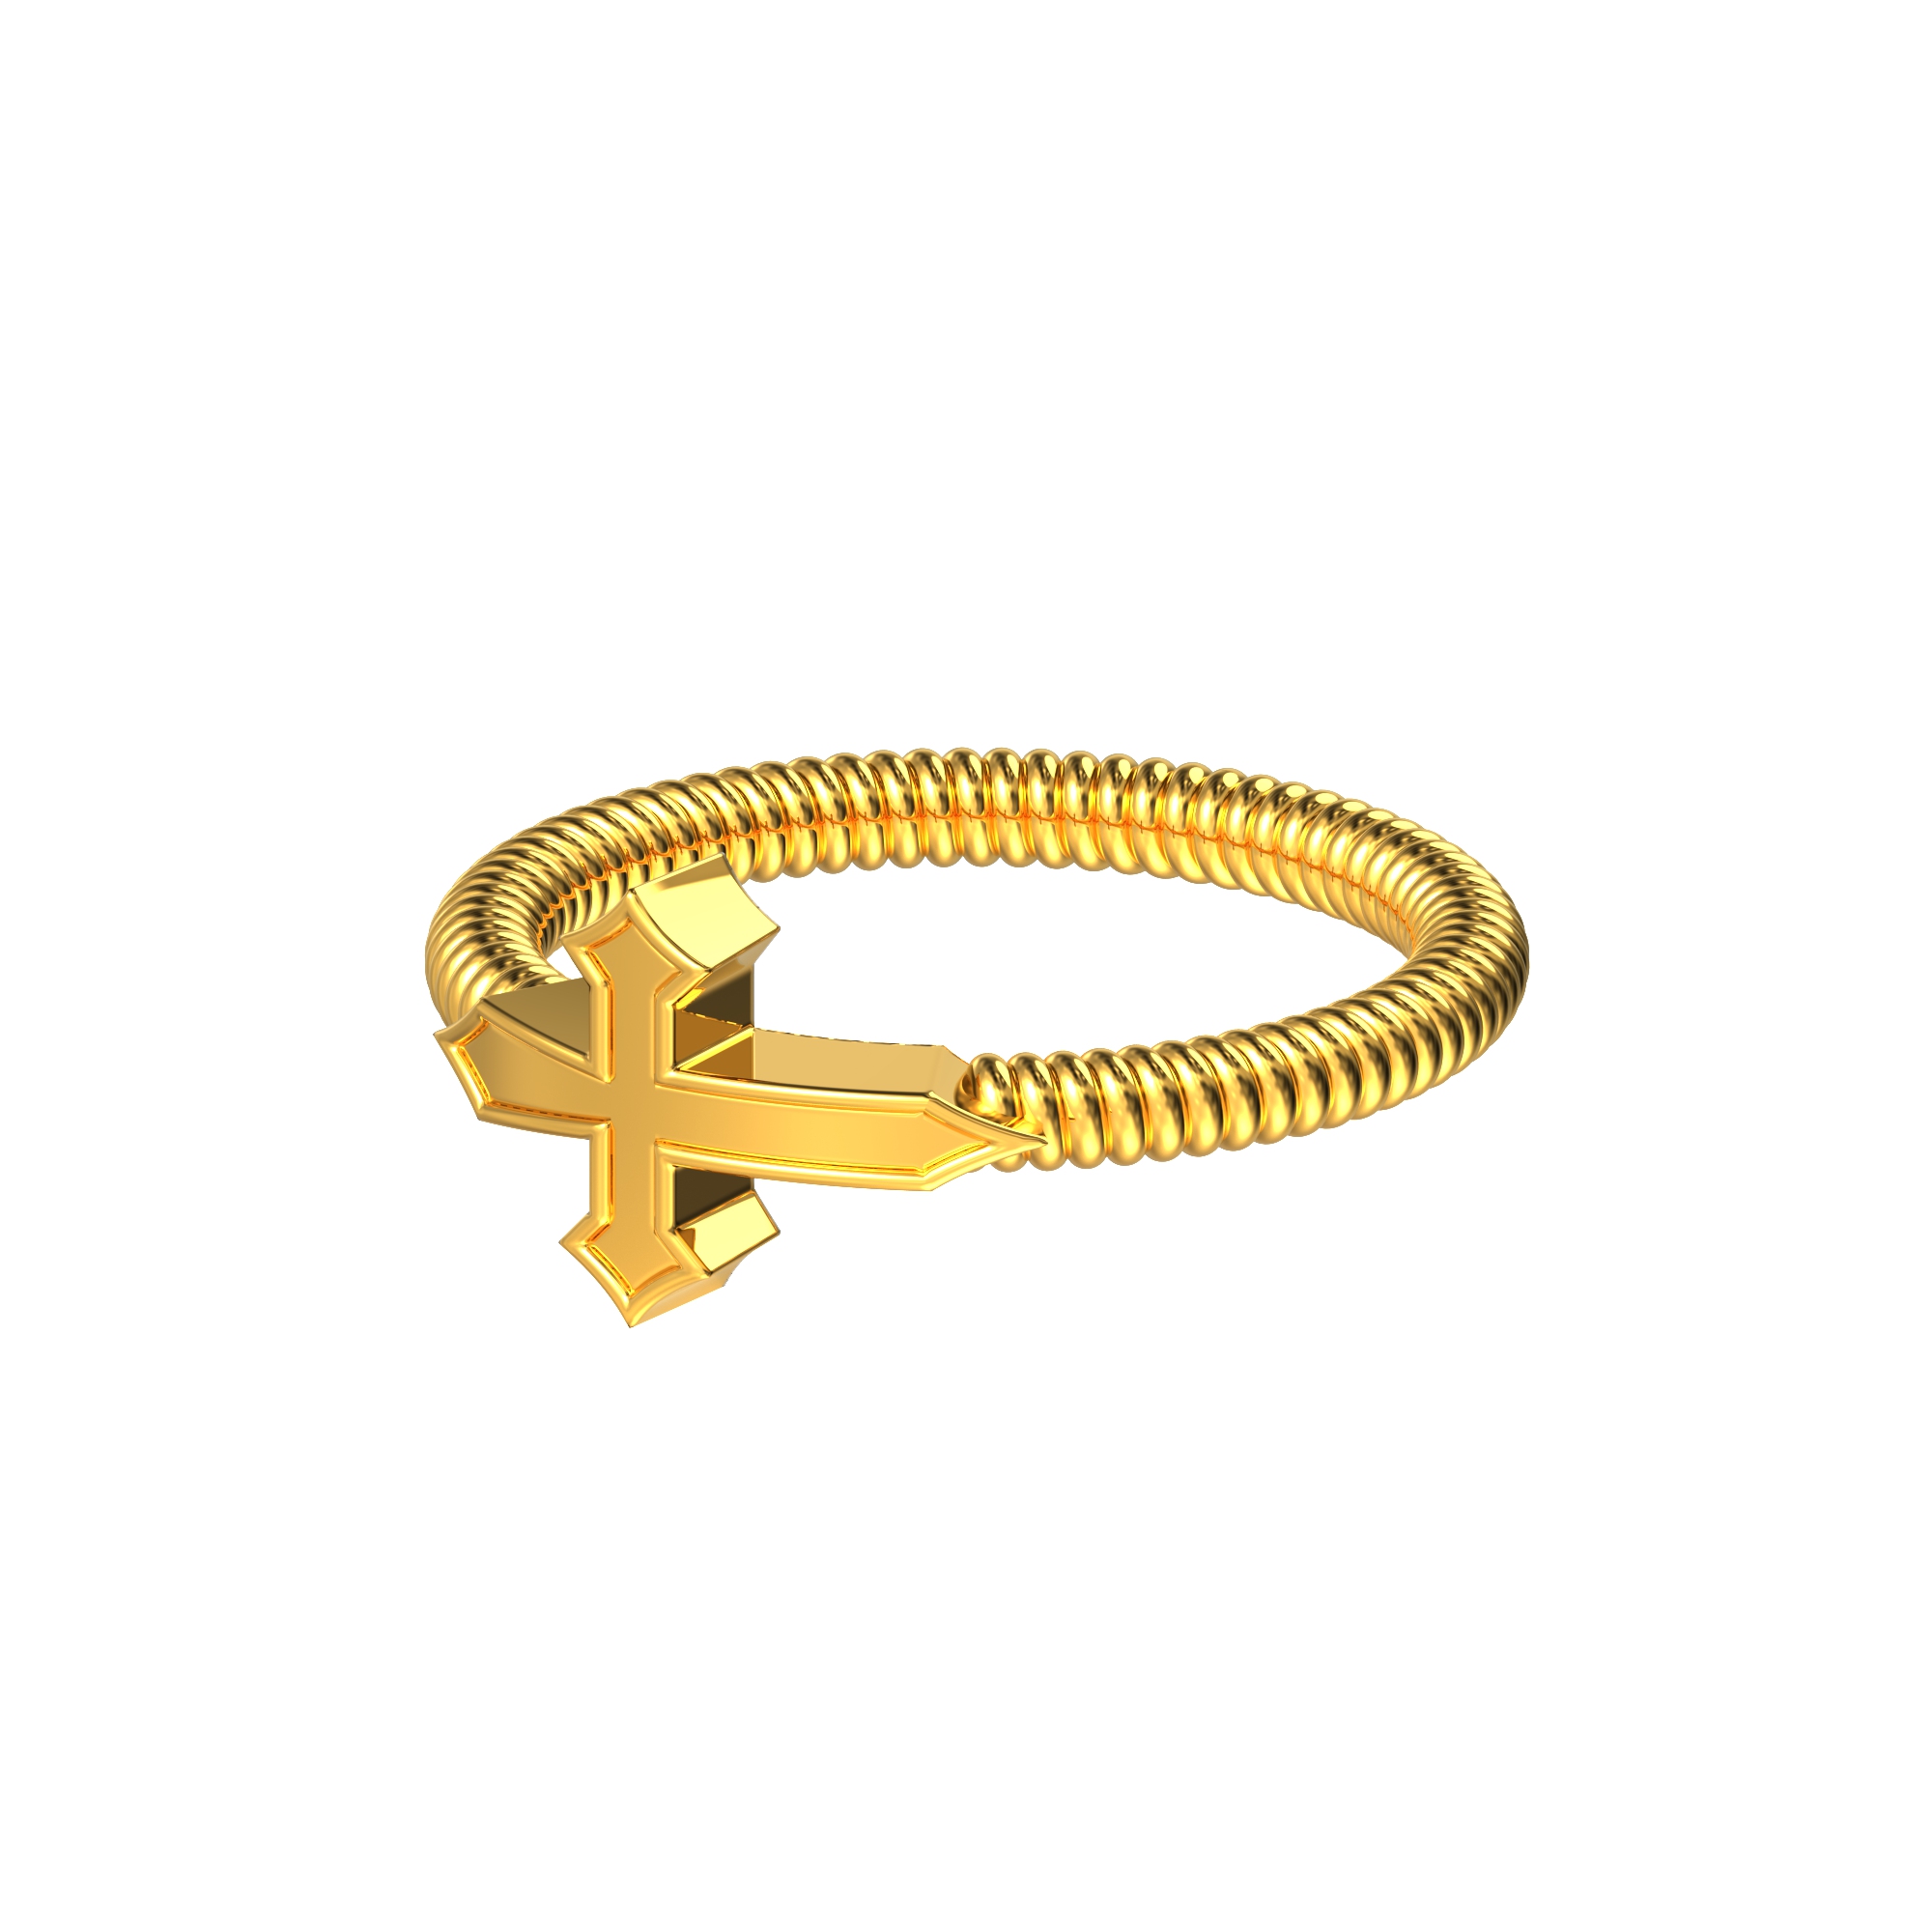 Christian cross gold ring